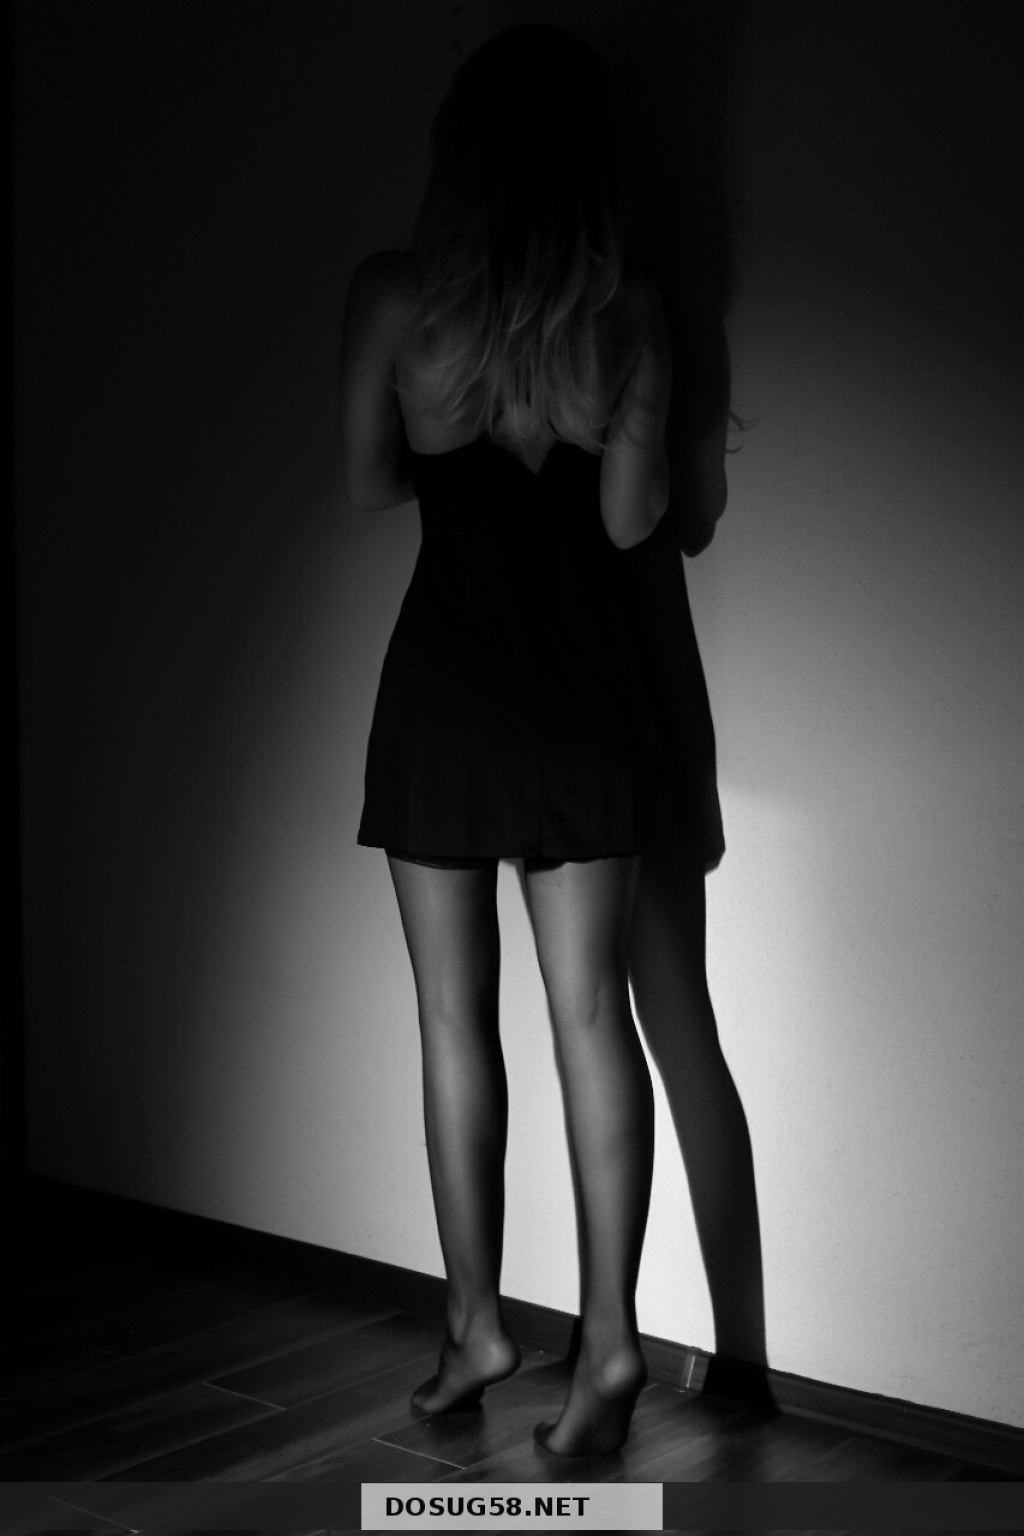 валерия: Проститутка-индивидуалка в Пензе